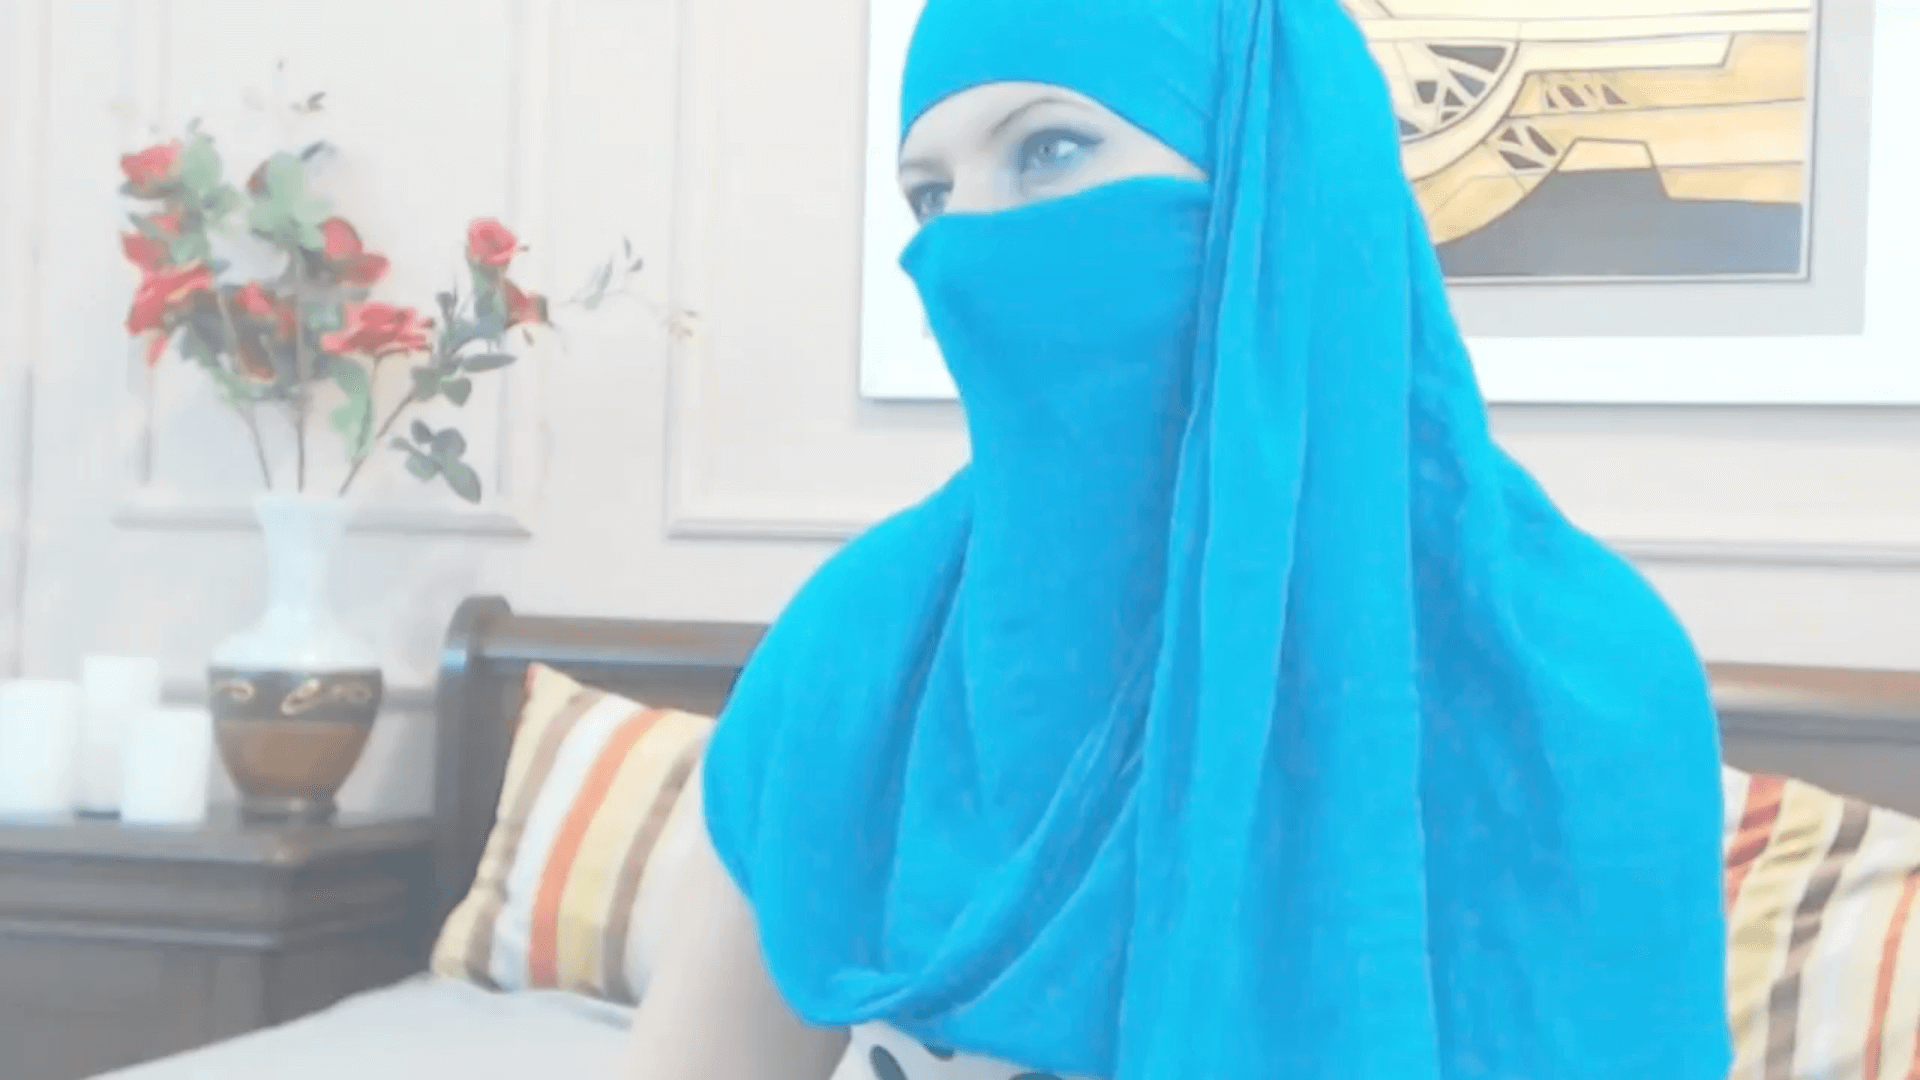 Video hijab sex Mallu Sex